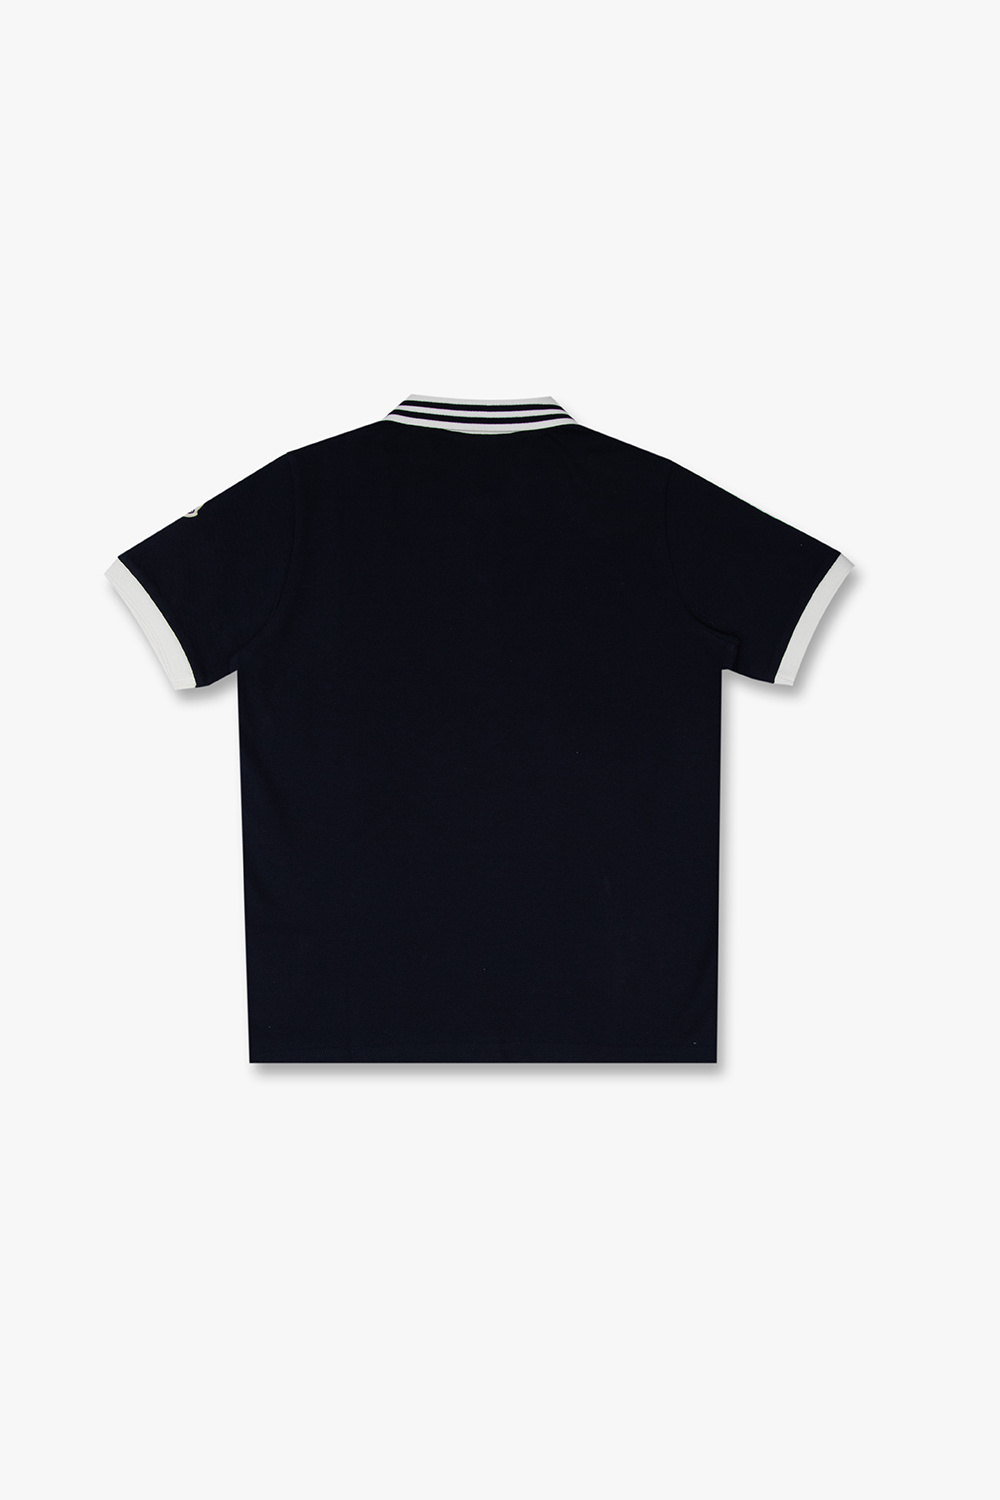 Moncler Enfant polo ralph lauren slim fit oxford shirt item